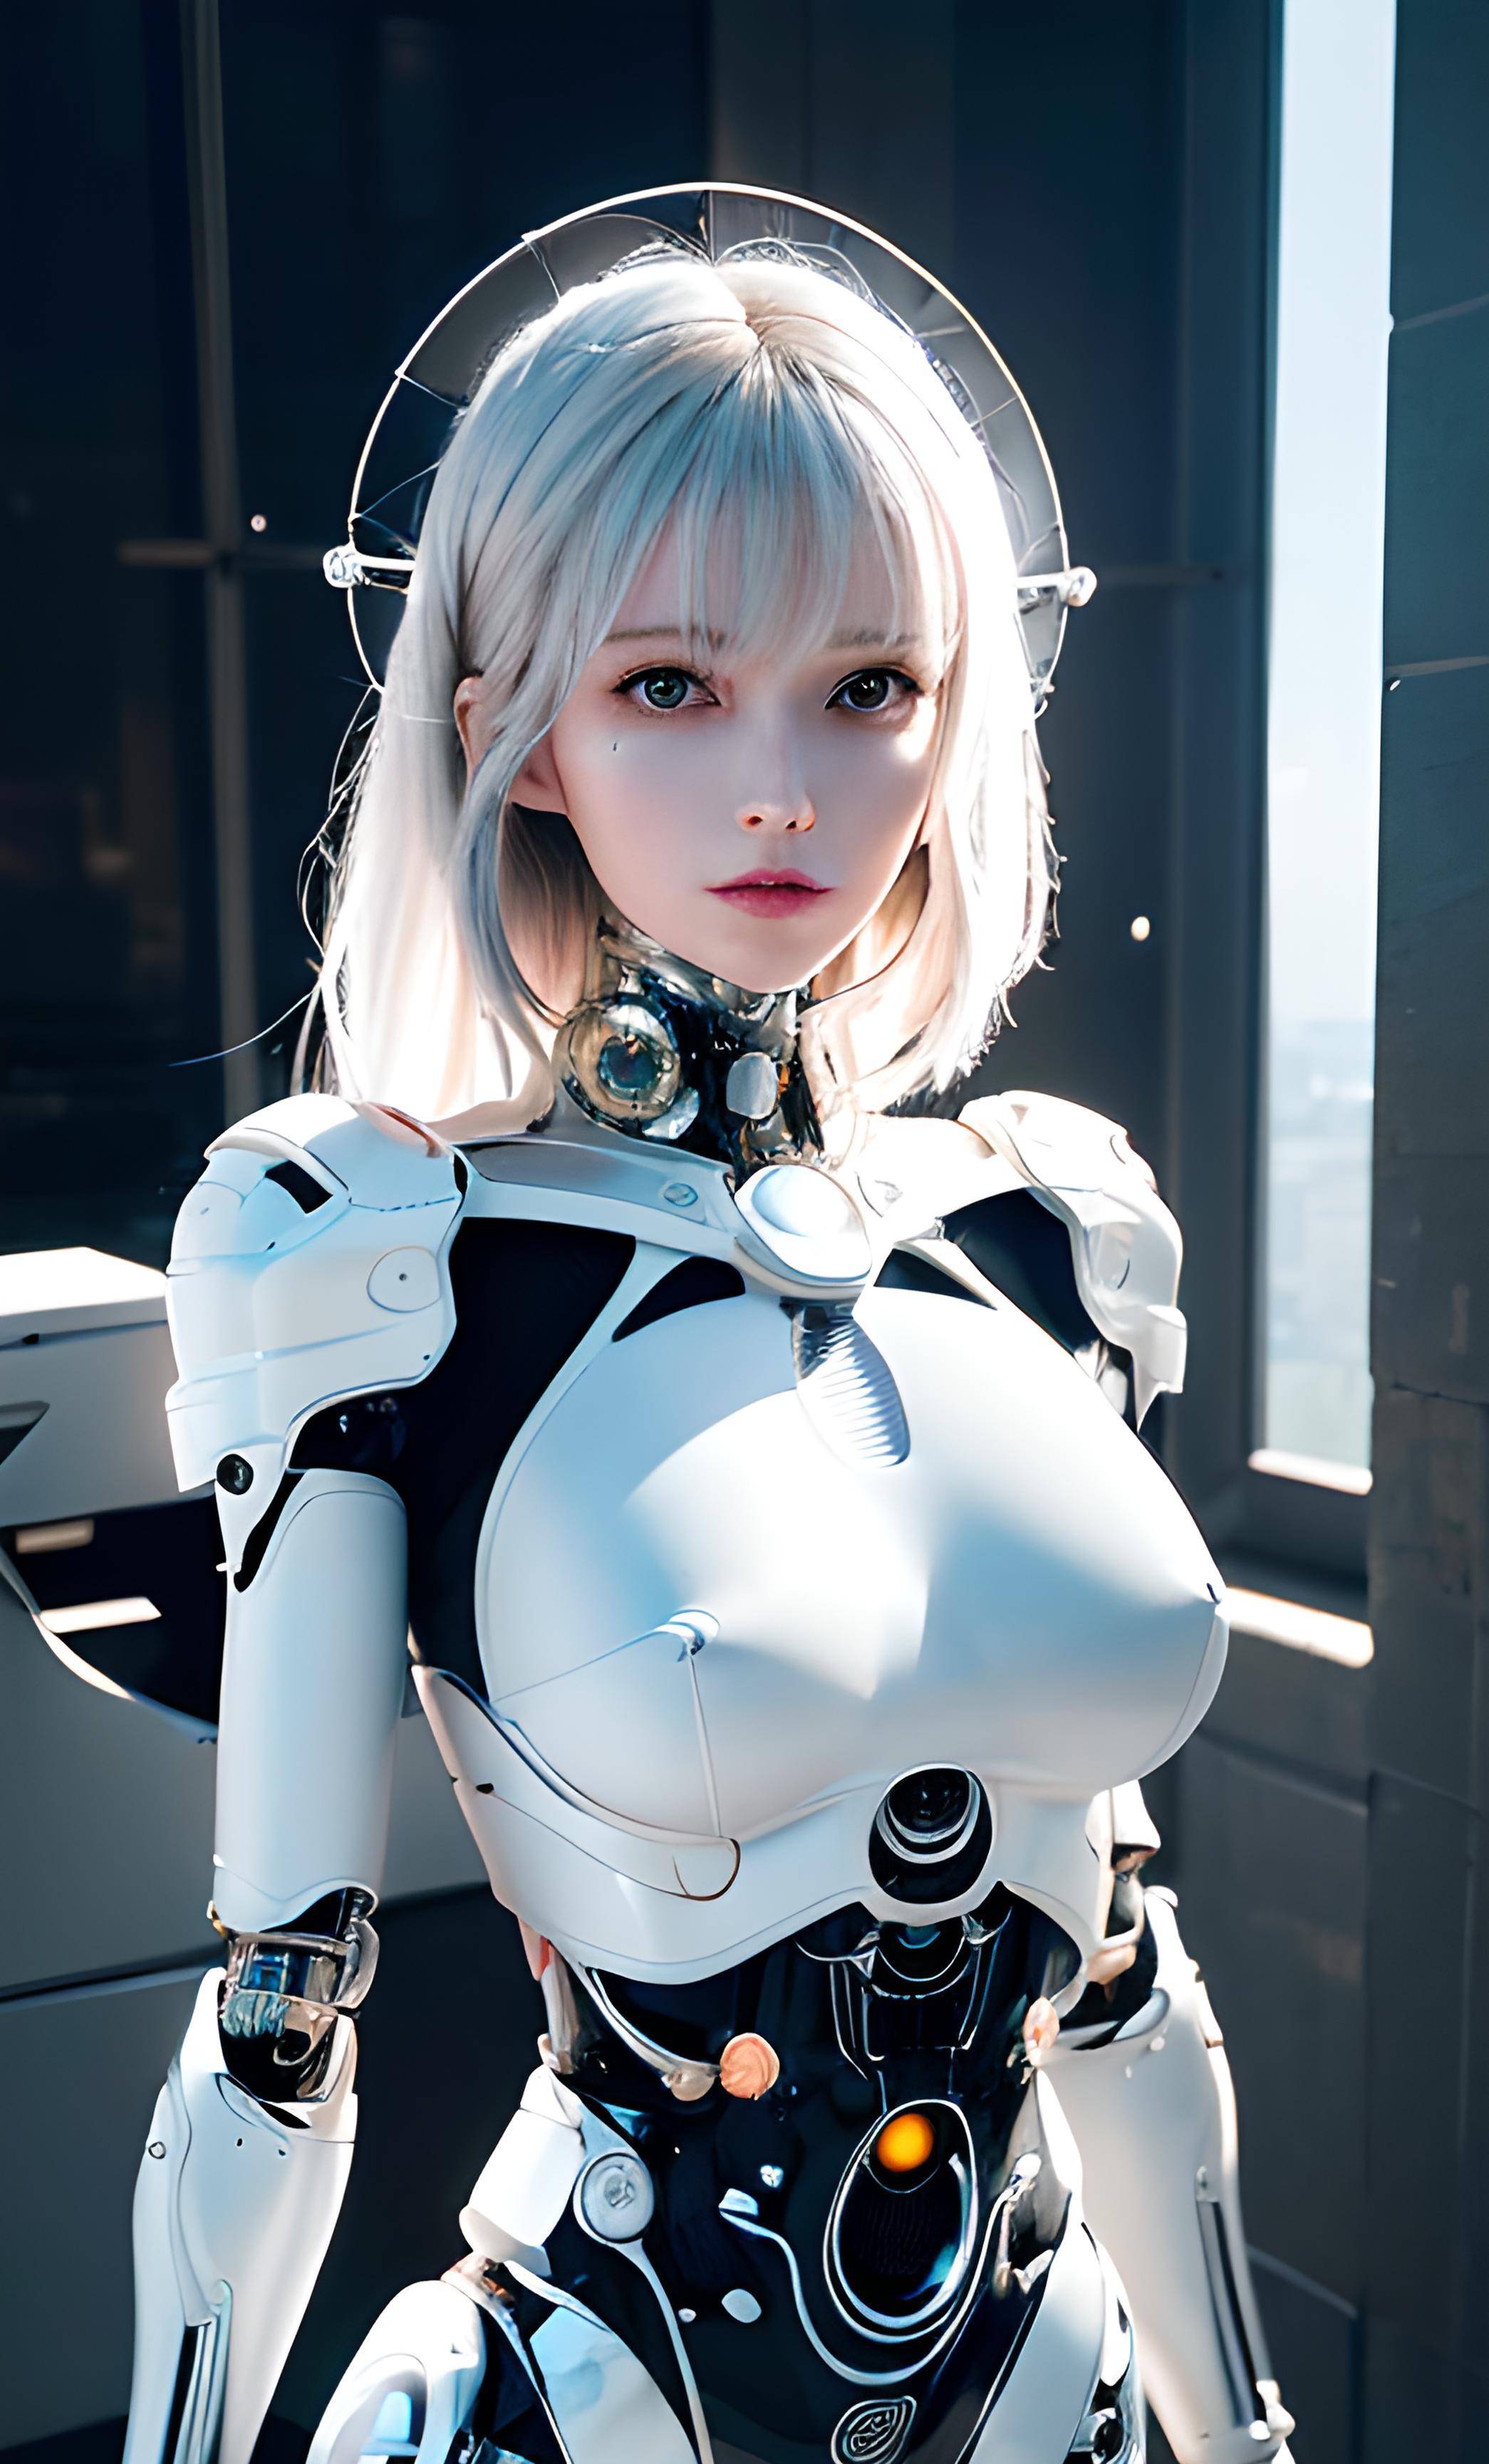 科技与艺术的完美结合:白发人形机械女带你领略机器人之美